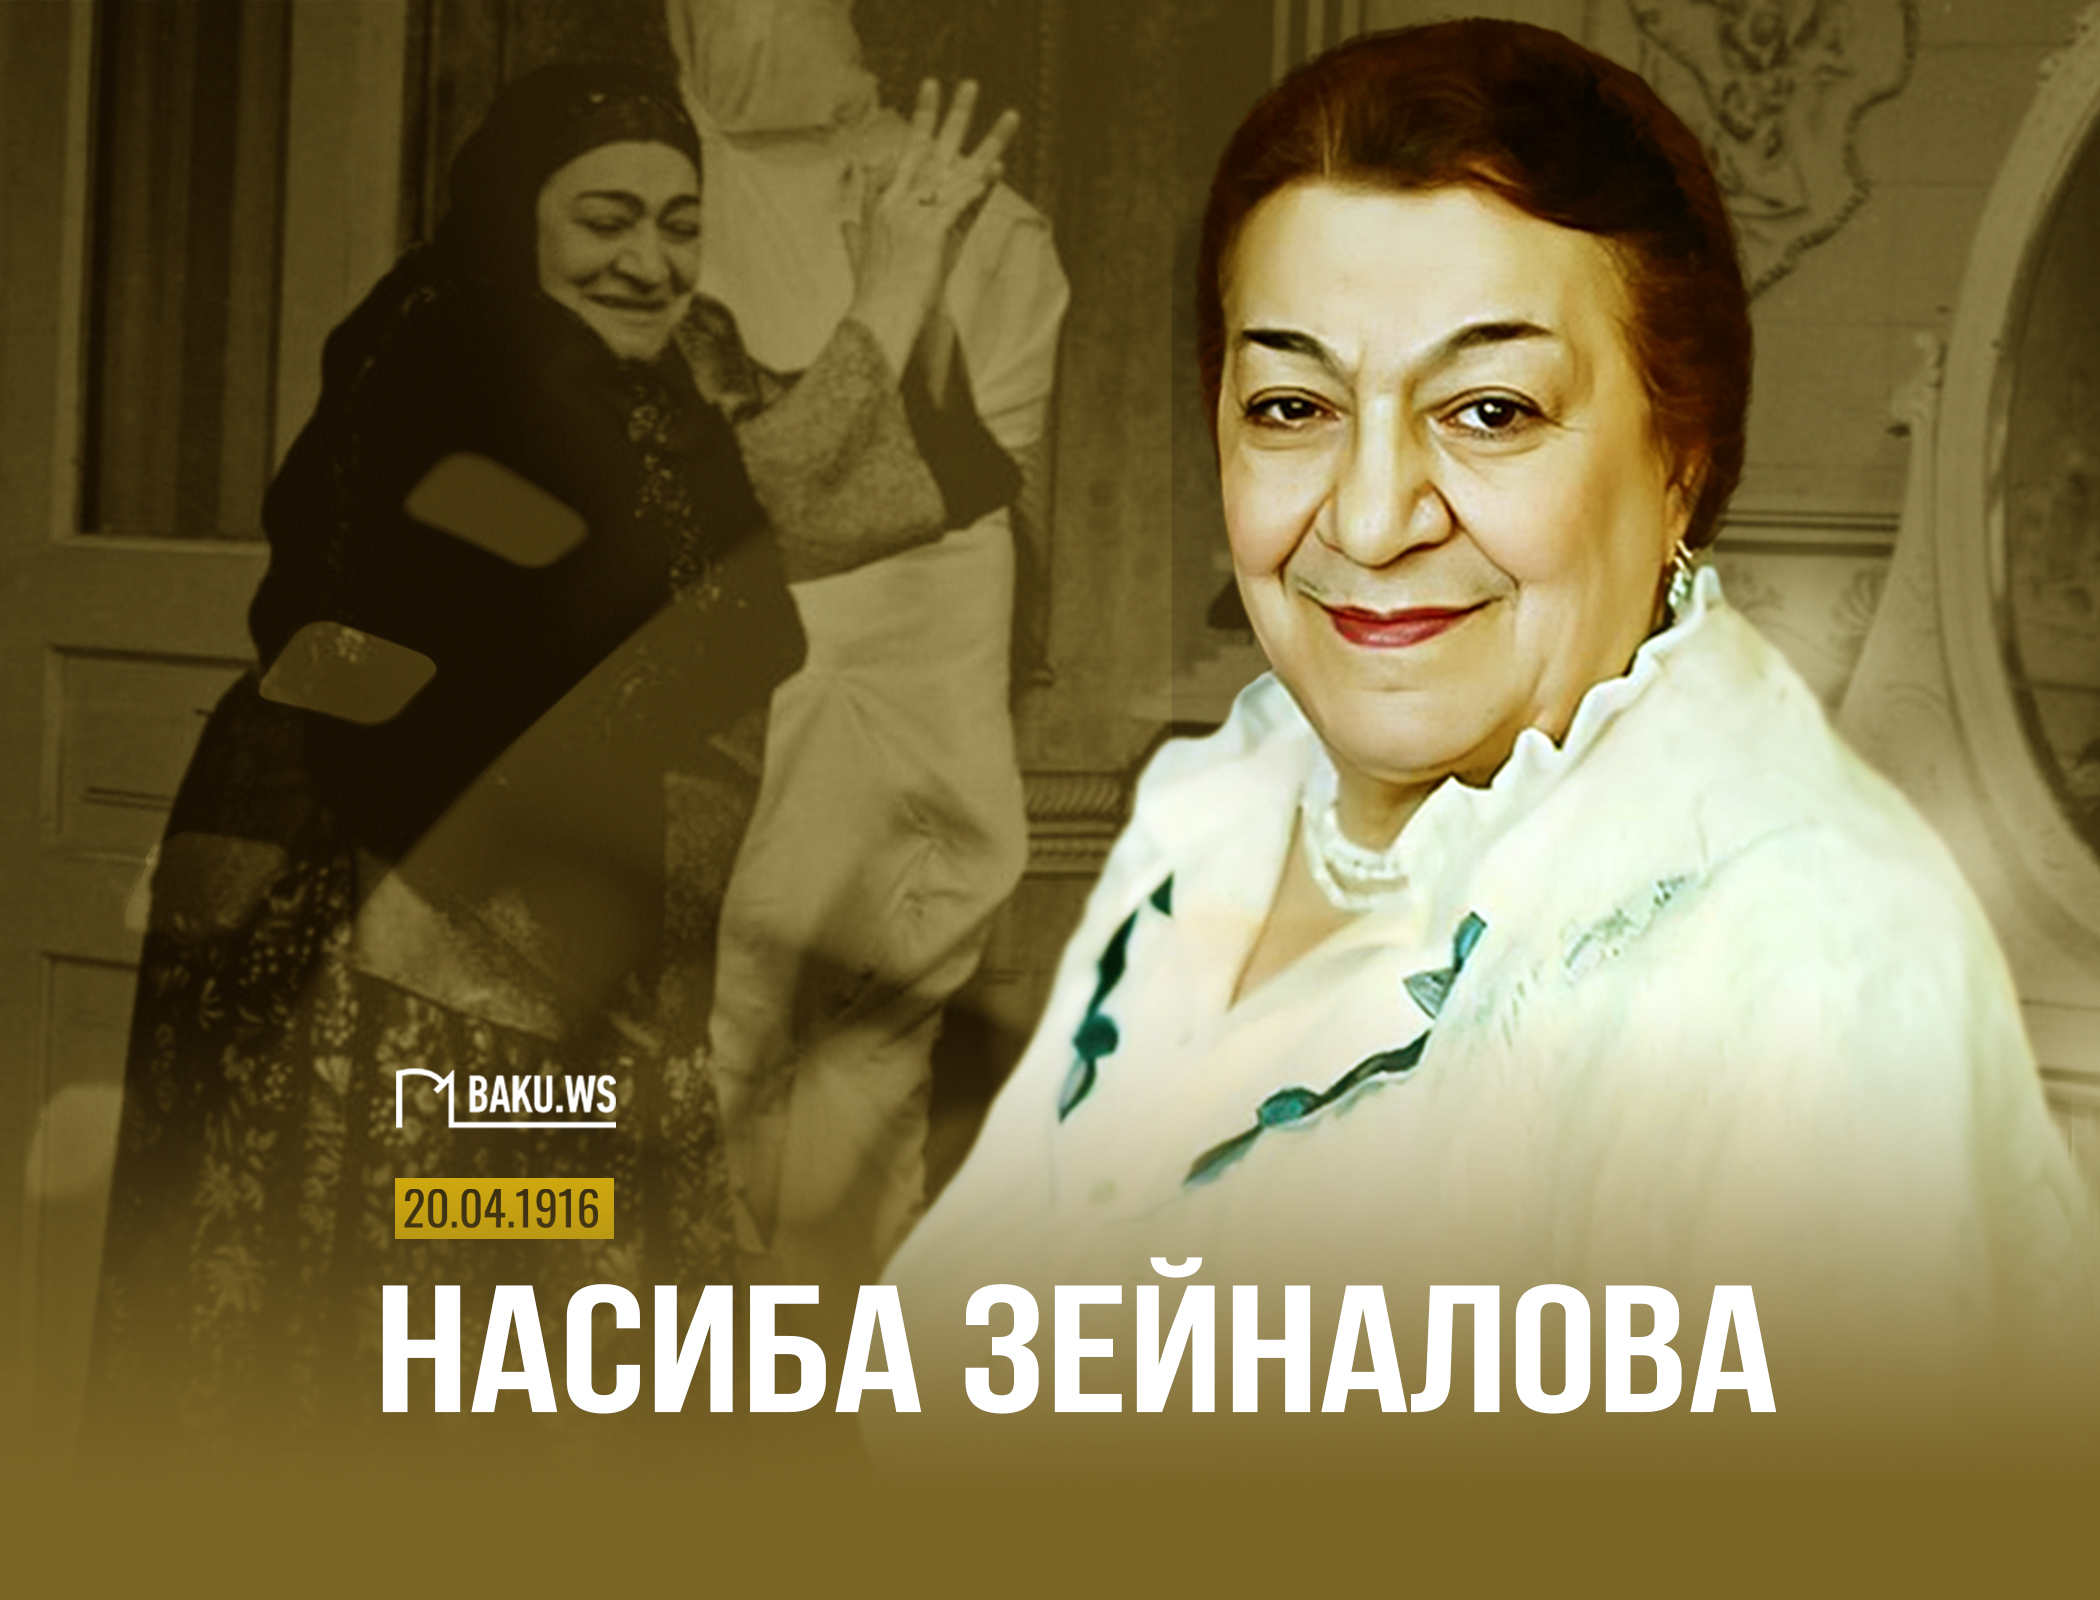 Сегодня легендарной азербайджанской актрисе Насибе Зейналовой исполнилось бы 107 лет